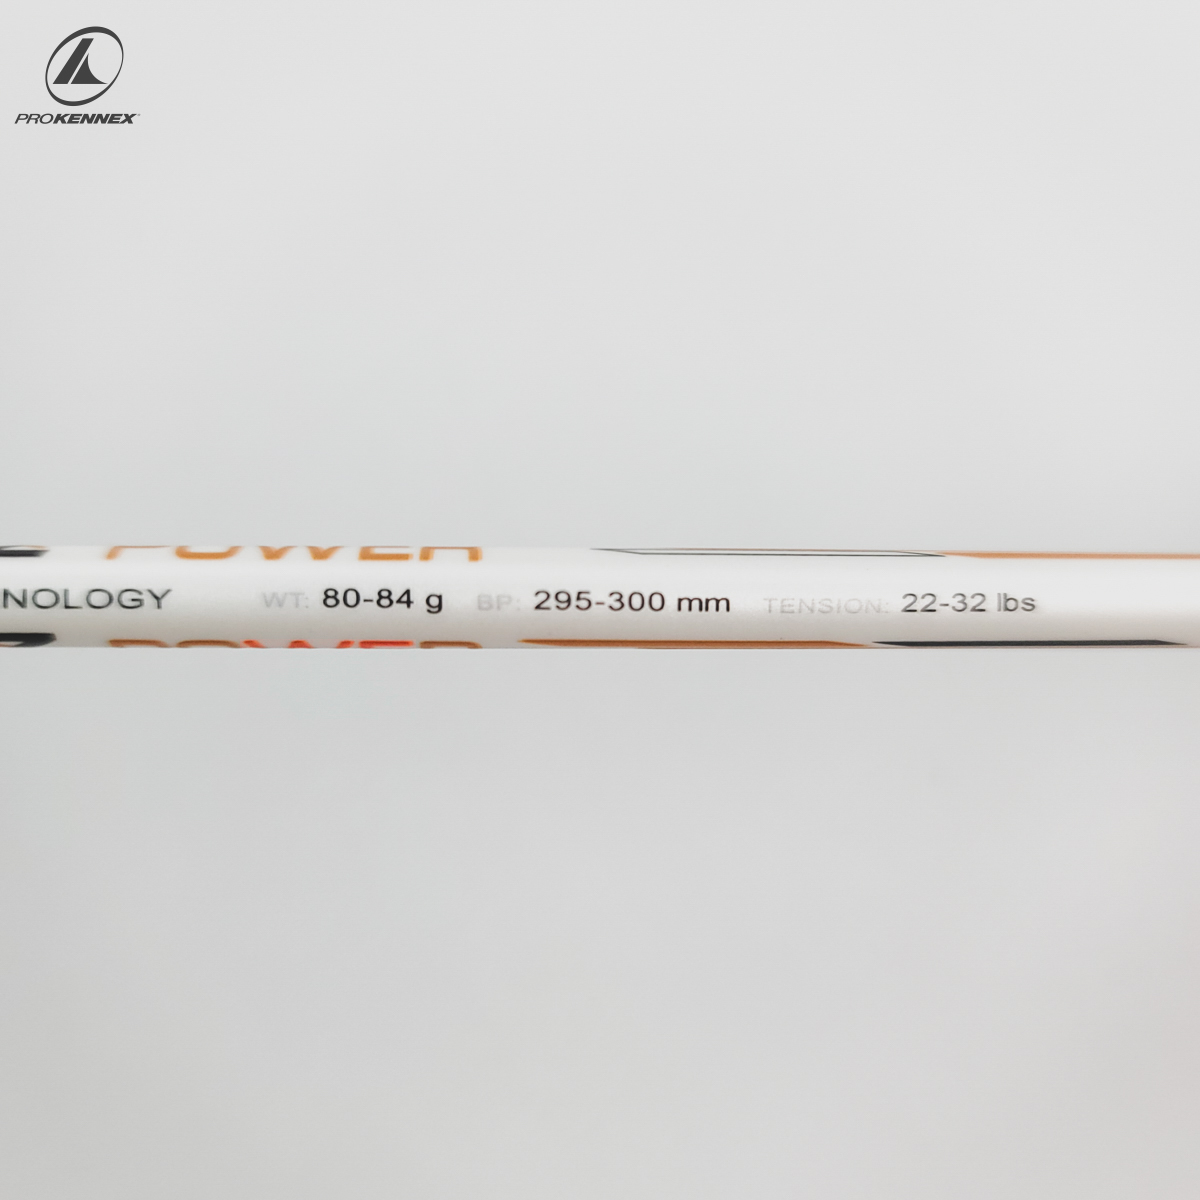 Chiều dài mỗi cây vợt đều được nhà sản xuất ghi trên thân vợt.